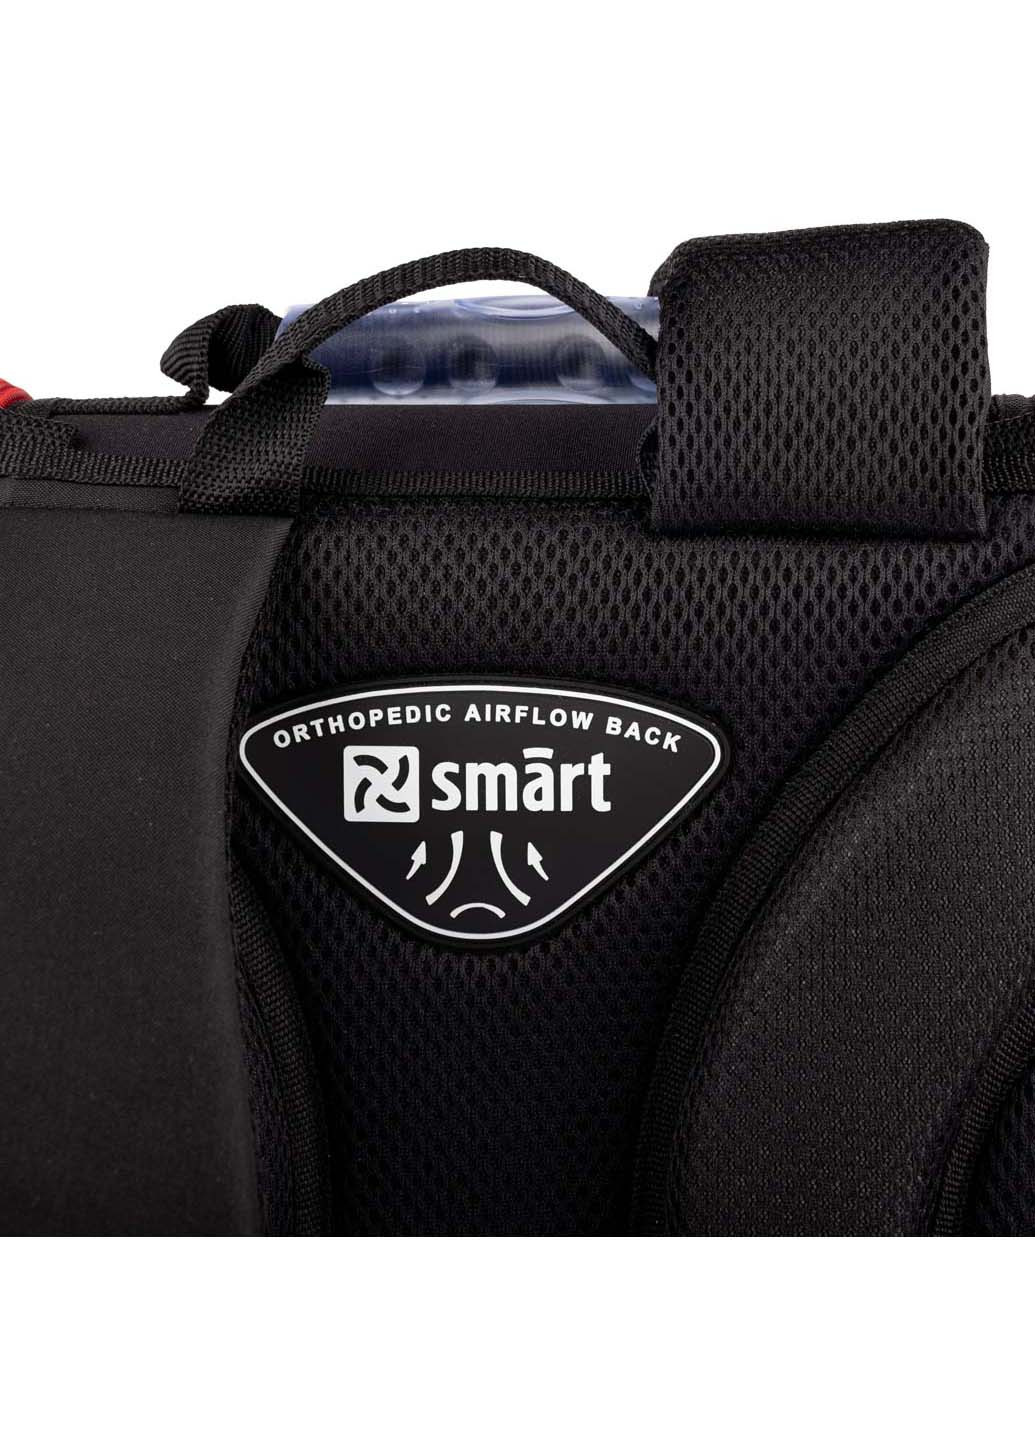 Рюкзак школьный каркасный PG-11 Fireman Smart (260163847)